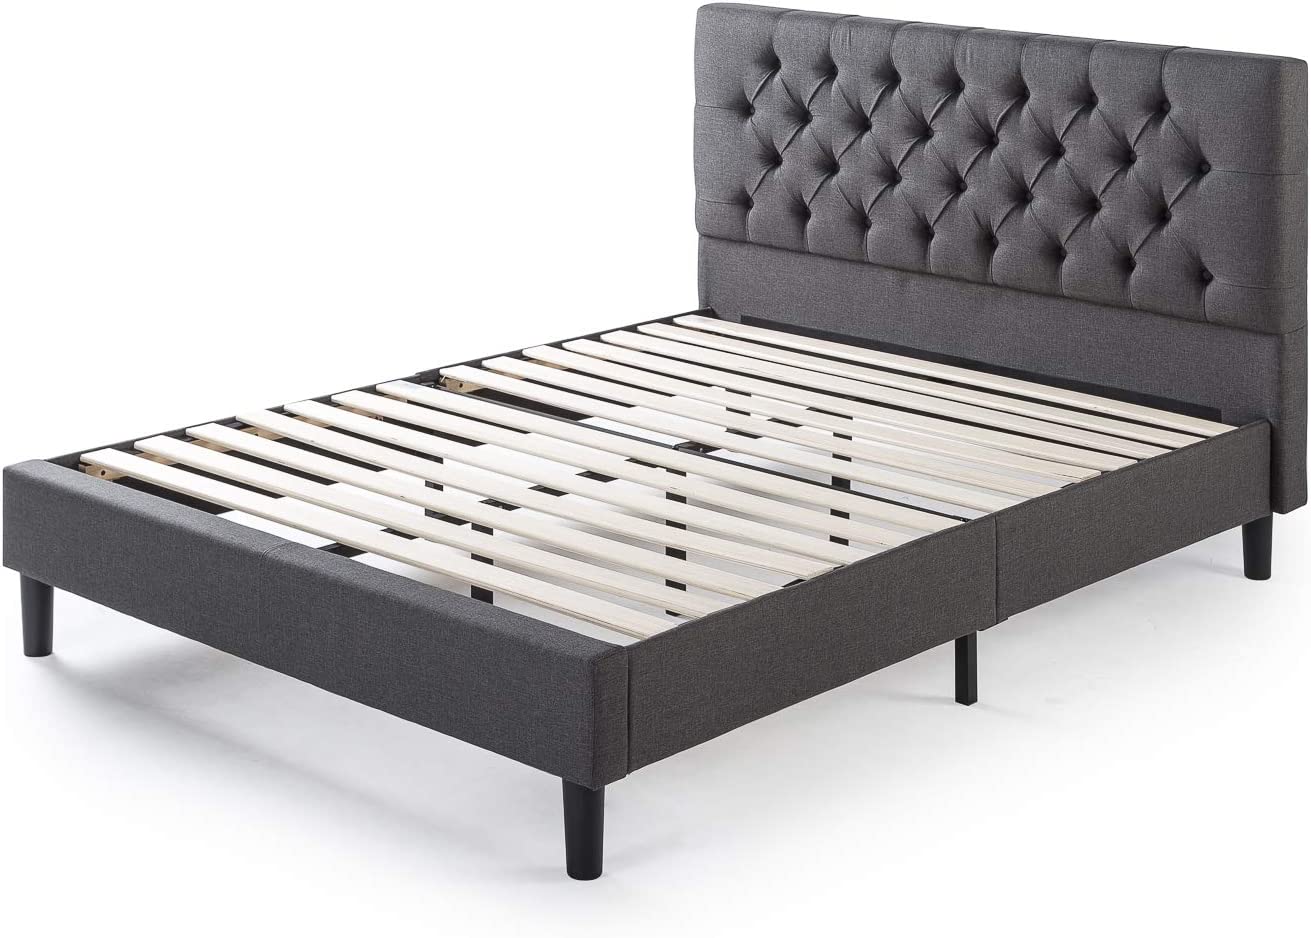 ZINUS Misty Upholstered Platform Bed Frame, Charcoal Gray